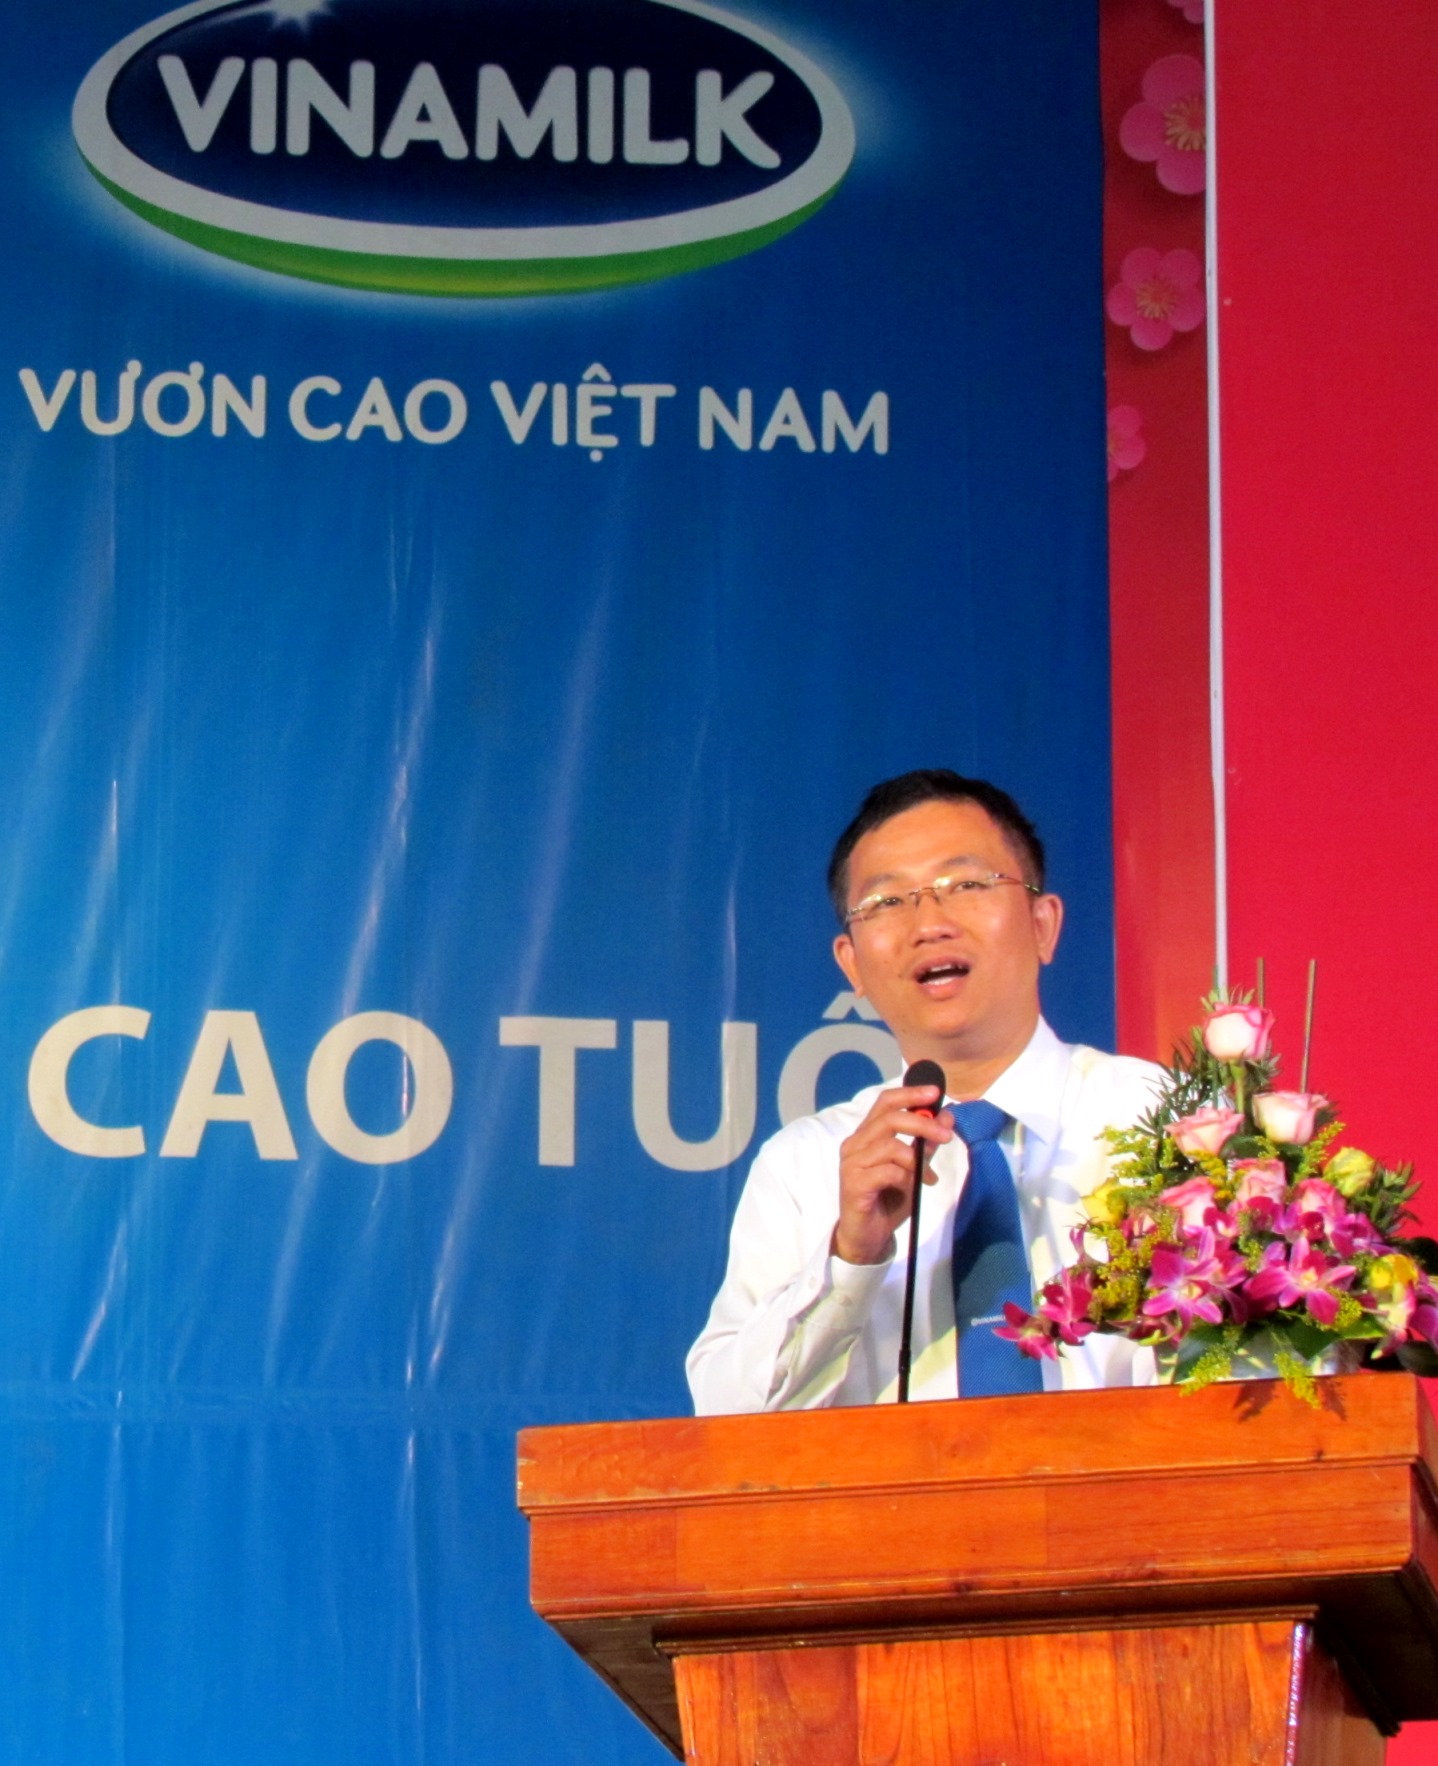 Ông Mai Thanh Việt – Giám đốc Marketing ngành hàng Sữa Bột Vinamilk chia sẻ về hành trình chăm sóc sức khỏe cho người cao tuổi của Vinamilk